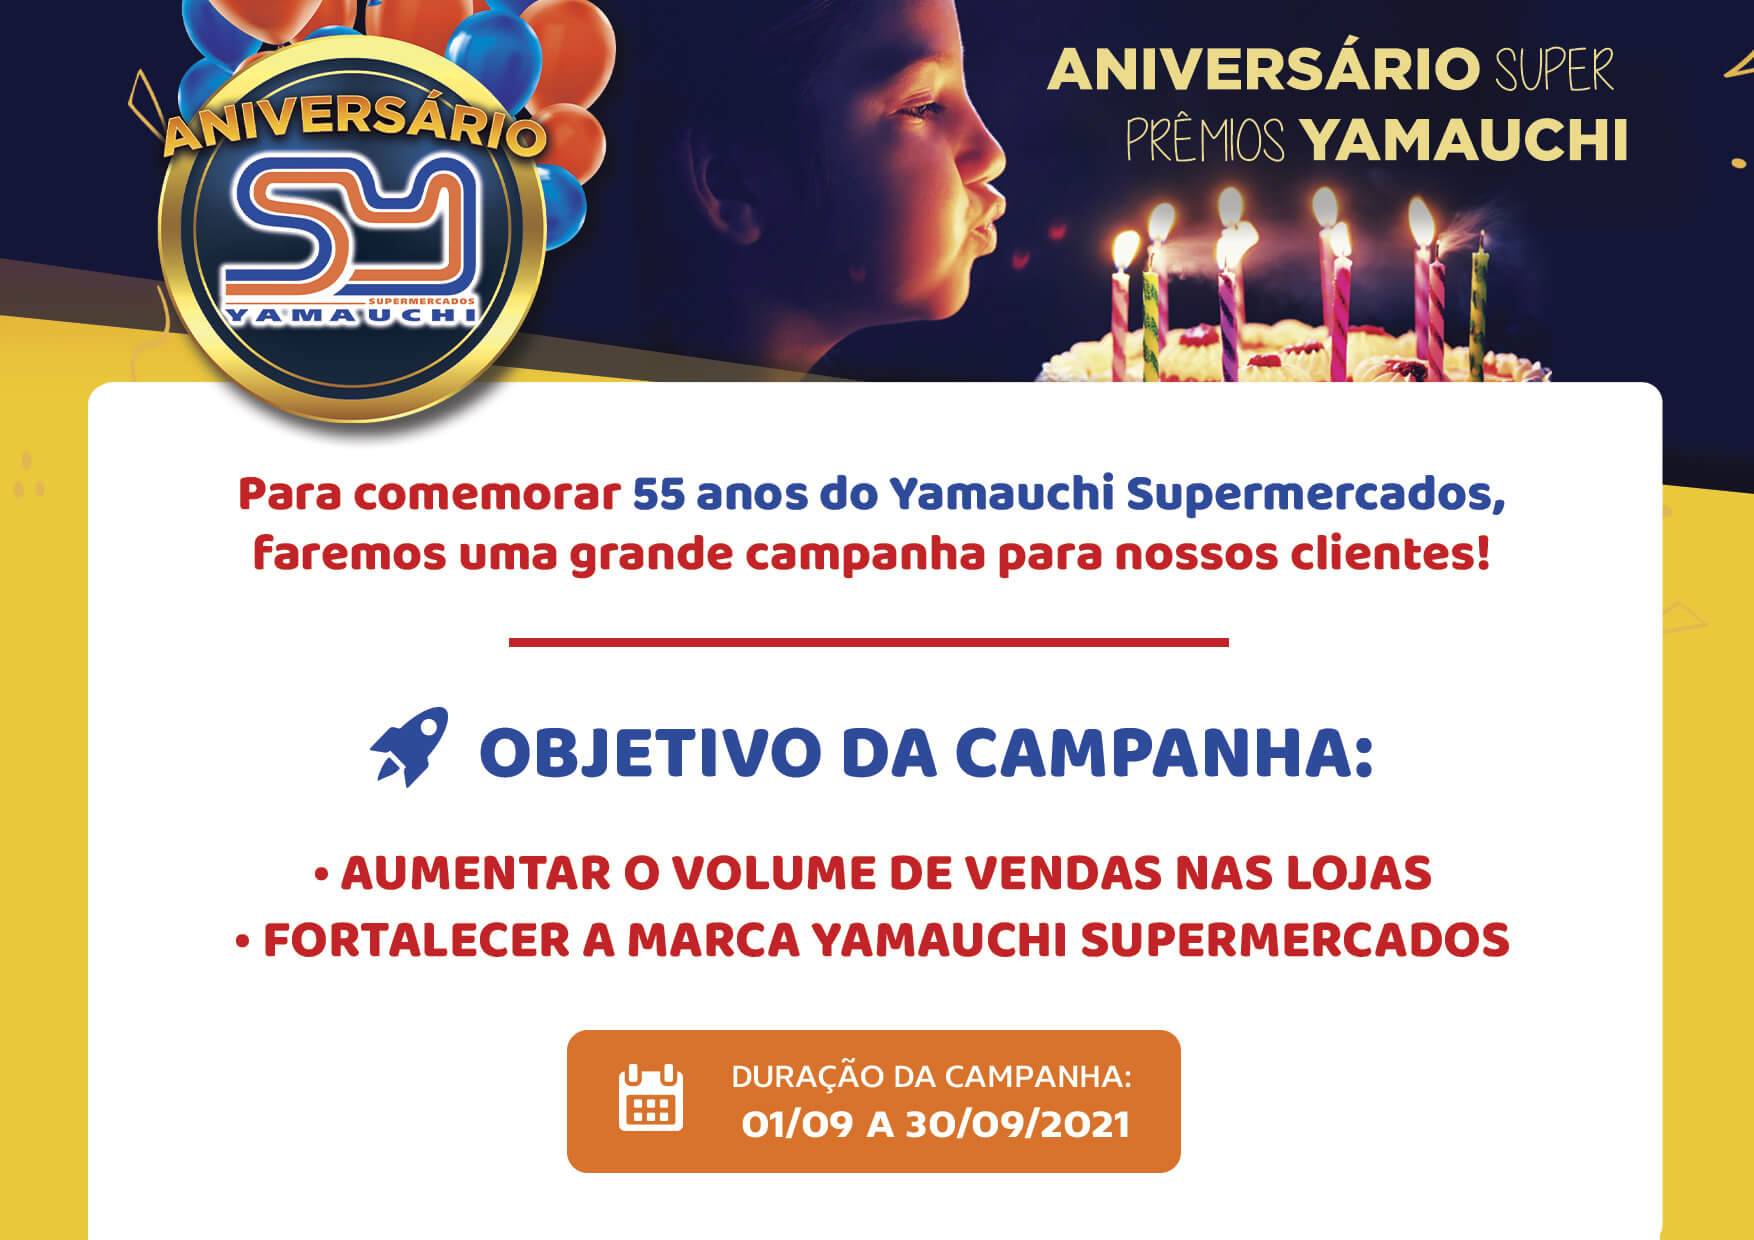 Campanha de Aniversário Yamauchi Supermercados 2020